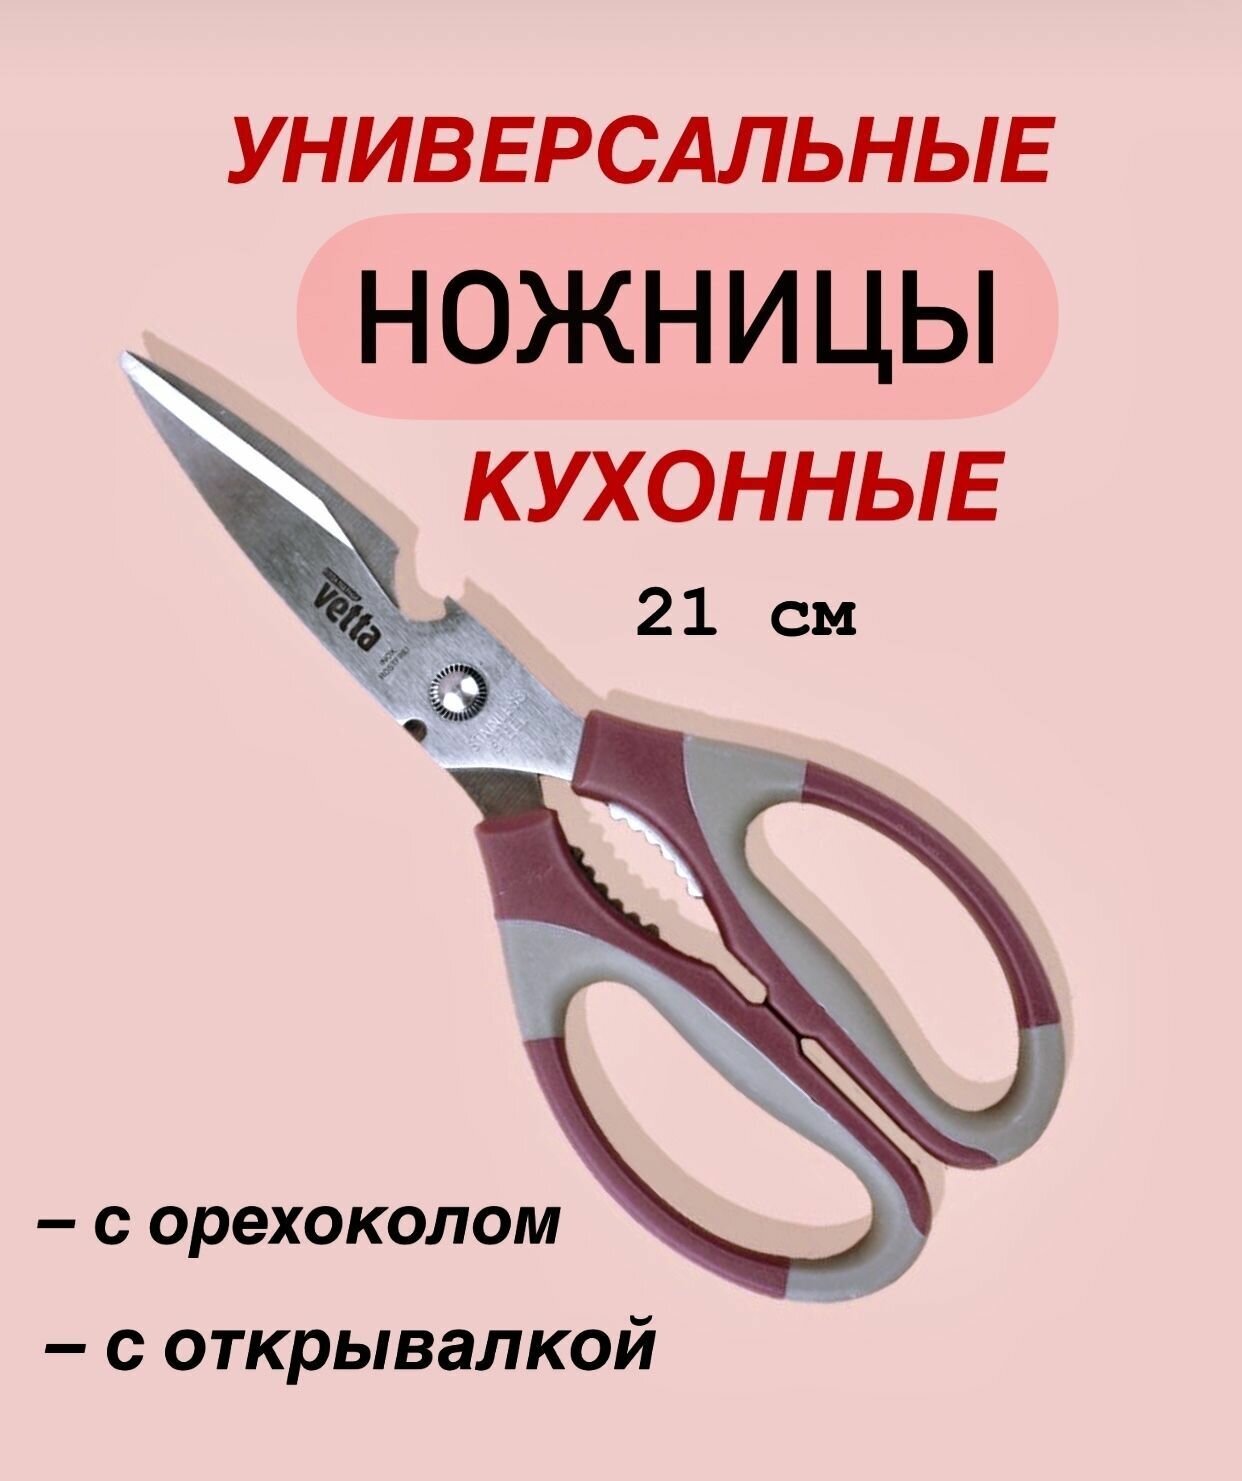 Ножницы кухонные универсальные с орехоколом и открывашкой 21 см